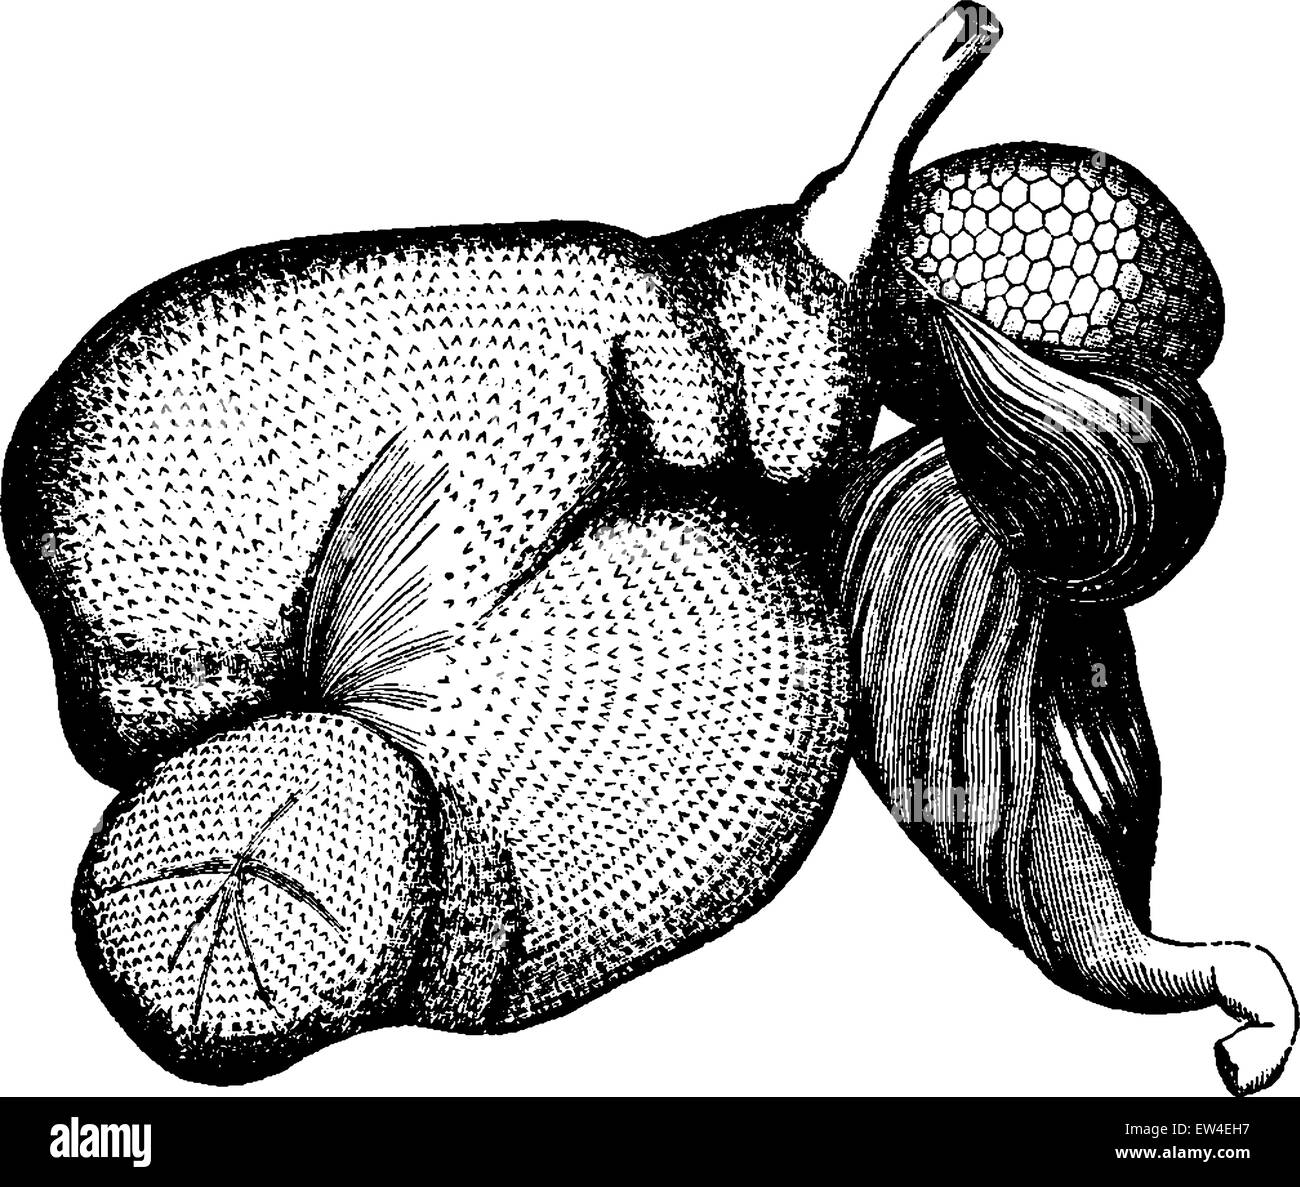 Ruminant stomach, vintage engraved illustration. La Vie dans la nature, 1890. Stock Vector